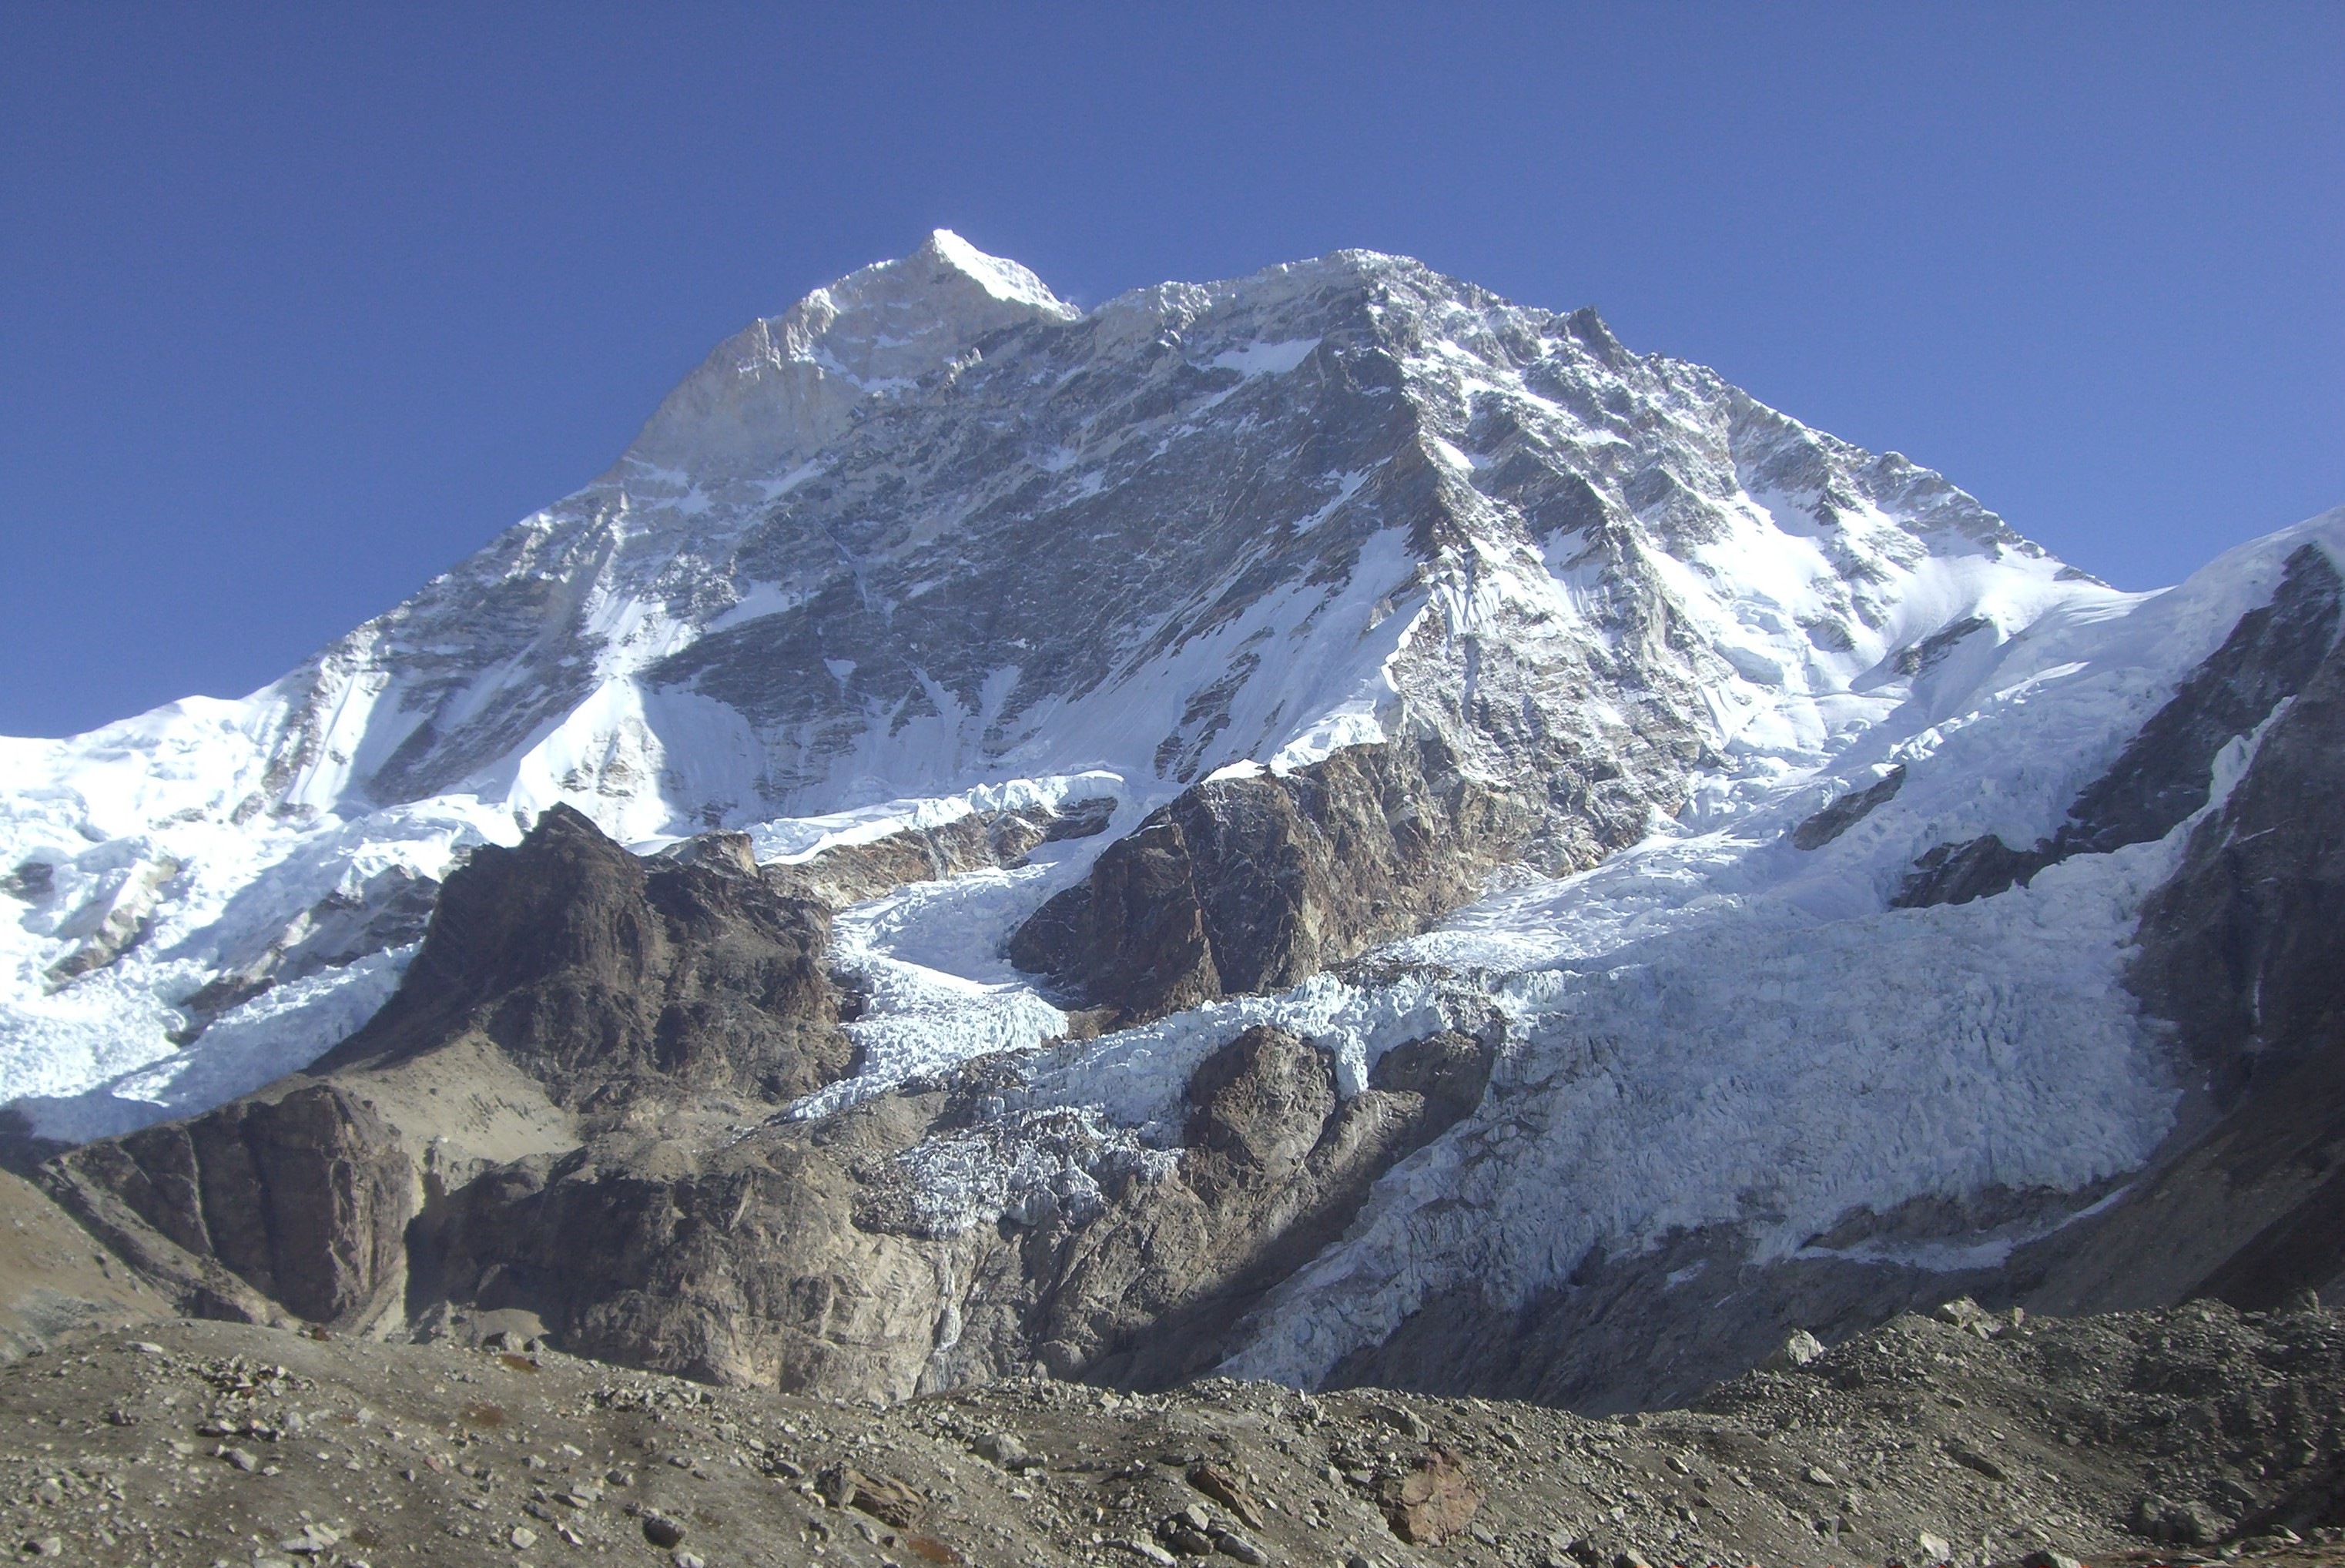 Member of Army mountaineering team to Mt. Makalu dies